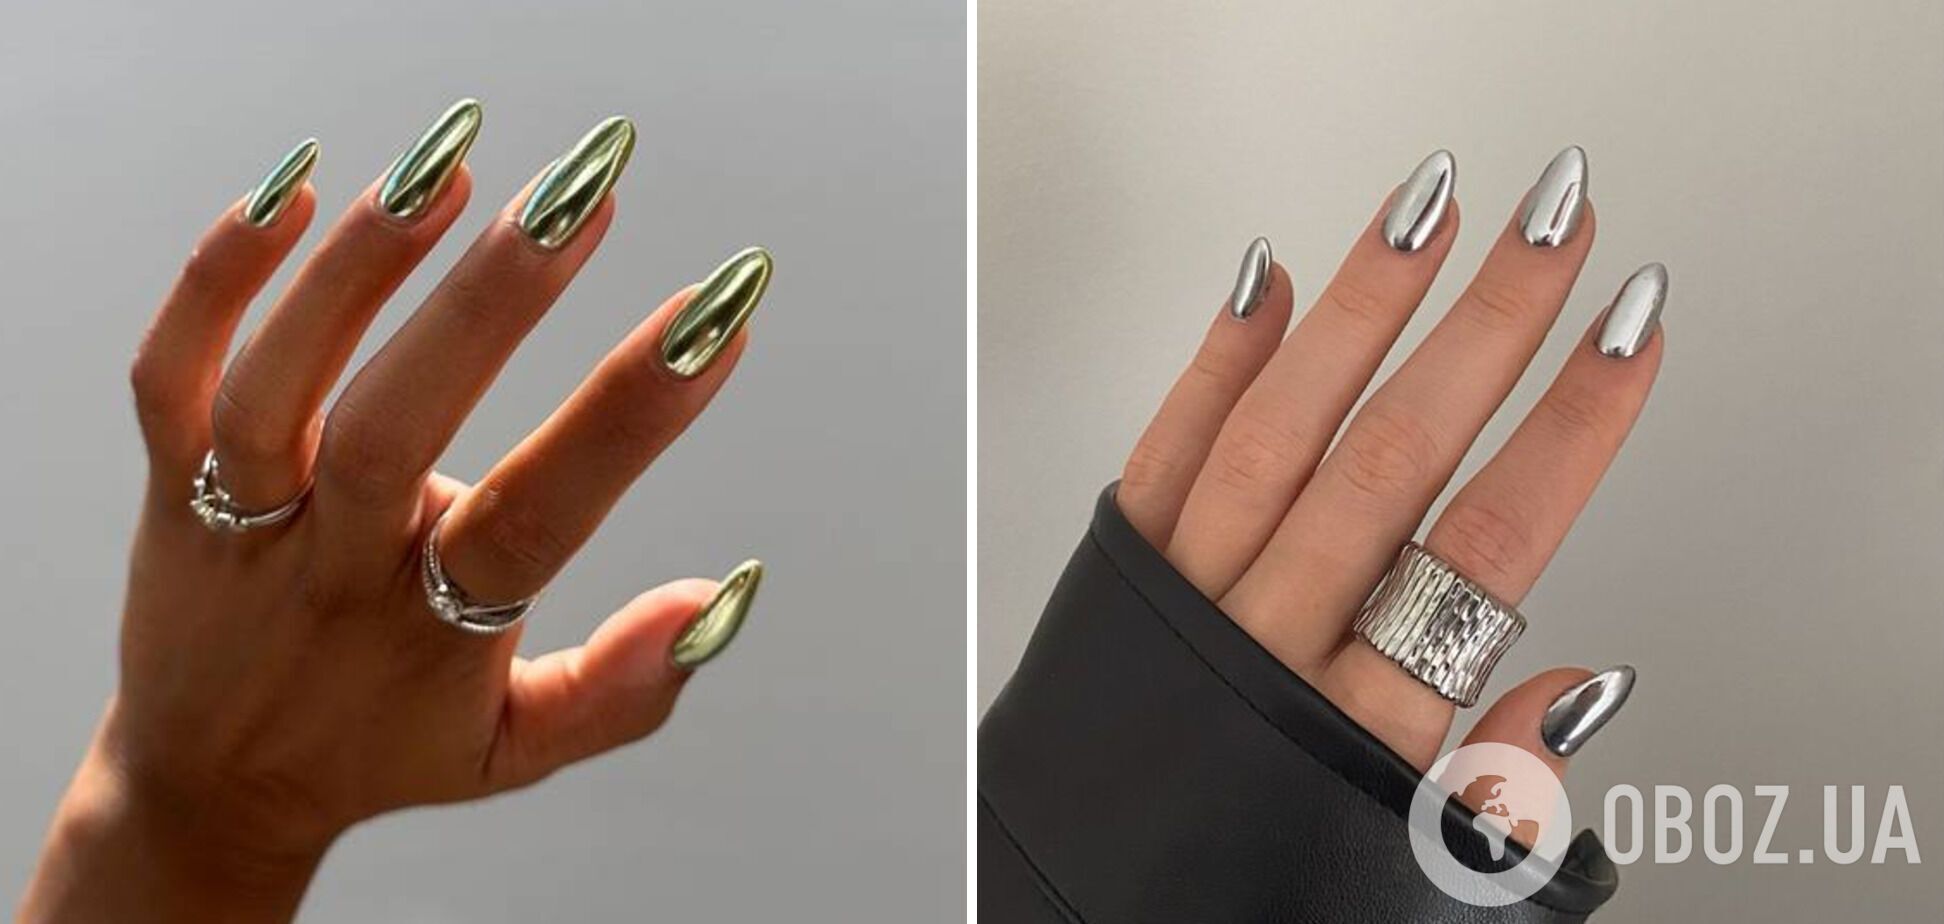 Металеві нігті вриваються в тренди: 5 дизайнів, які будуть модними взимку